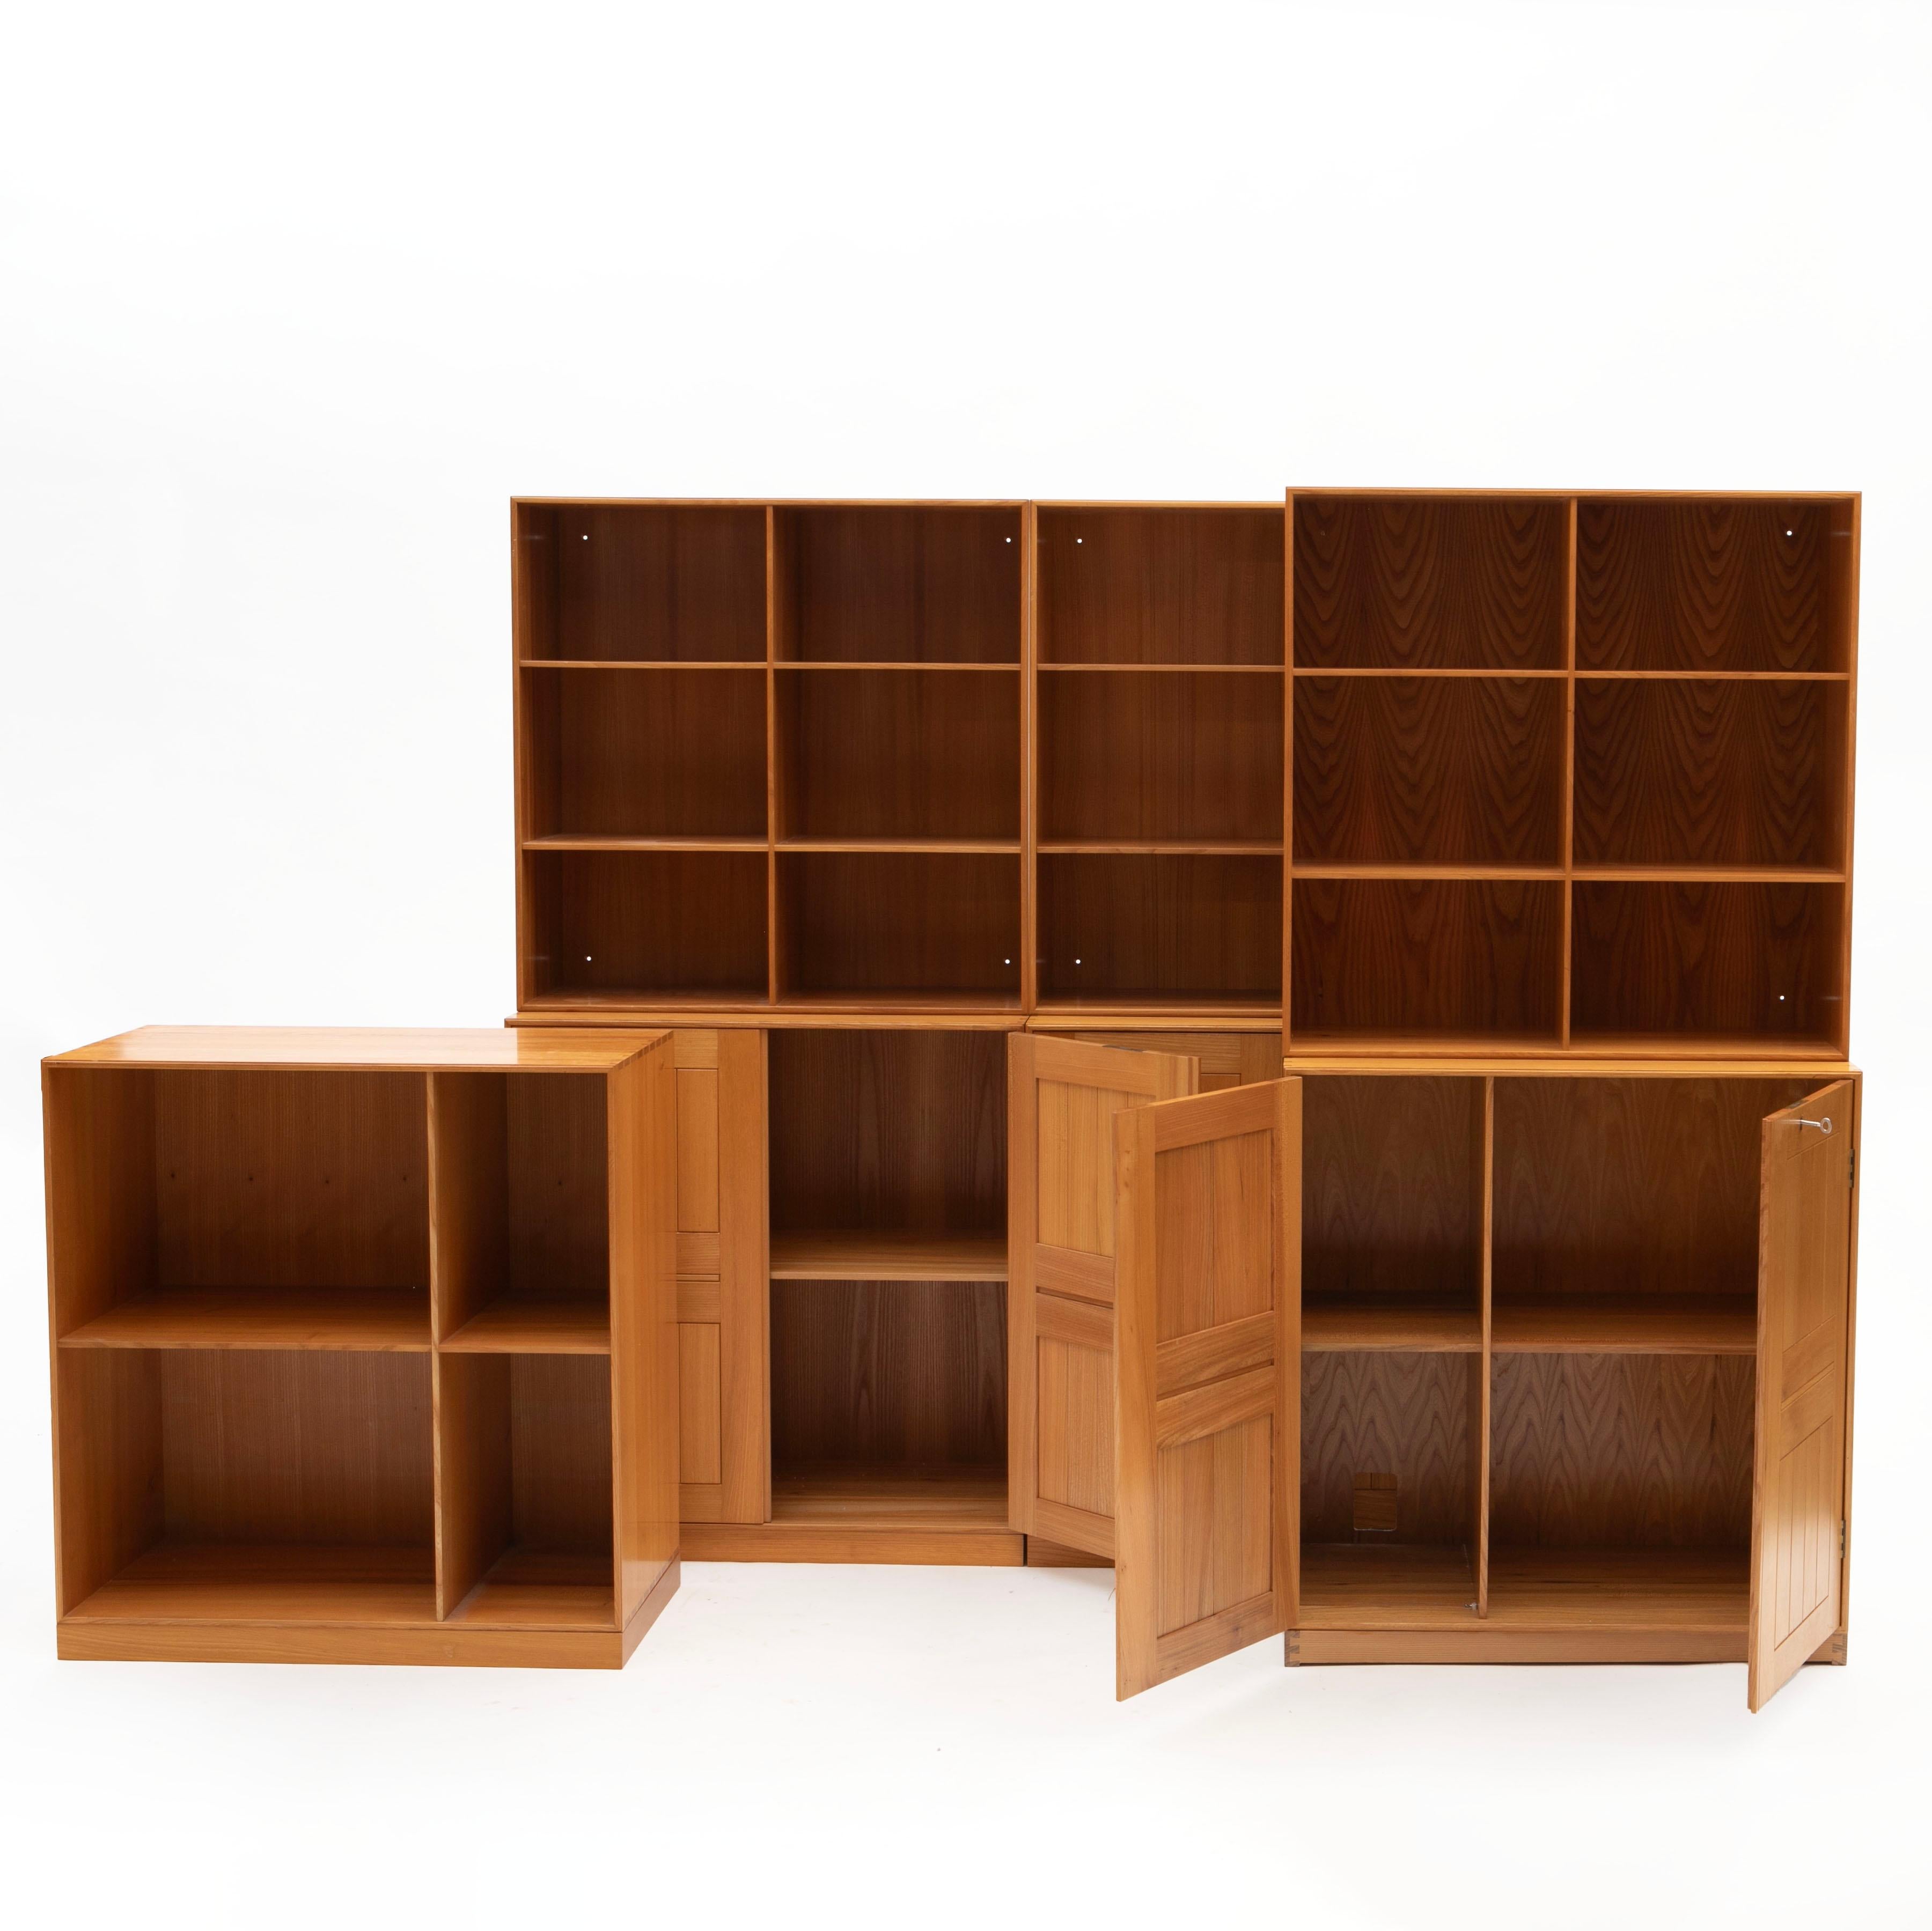 Mogens Koch, 1898-1992
Mogens Koch Aufbewahrungssystem aus Eschenholz, hergestellt von Rud. Rasmussen, 1960-1970.
Set aus drei Schränken, drei Bücherregalen + 1 Bücherregal in der gleichen Größe wie die Schränke (76x76x36 cm) auf drei Sockeln. Alles